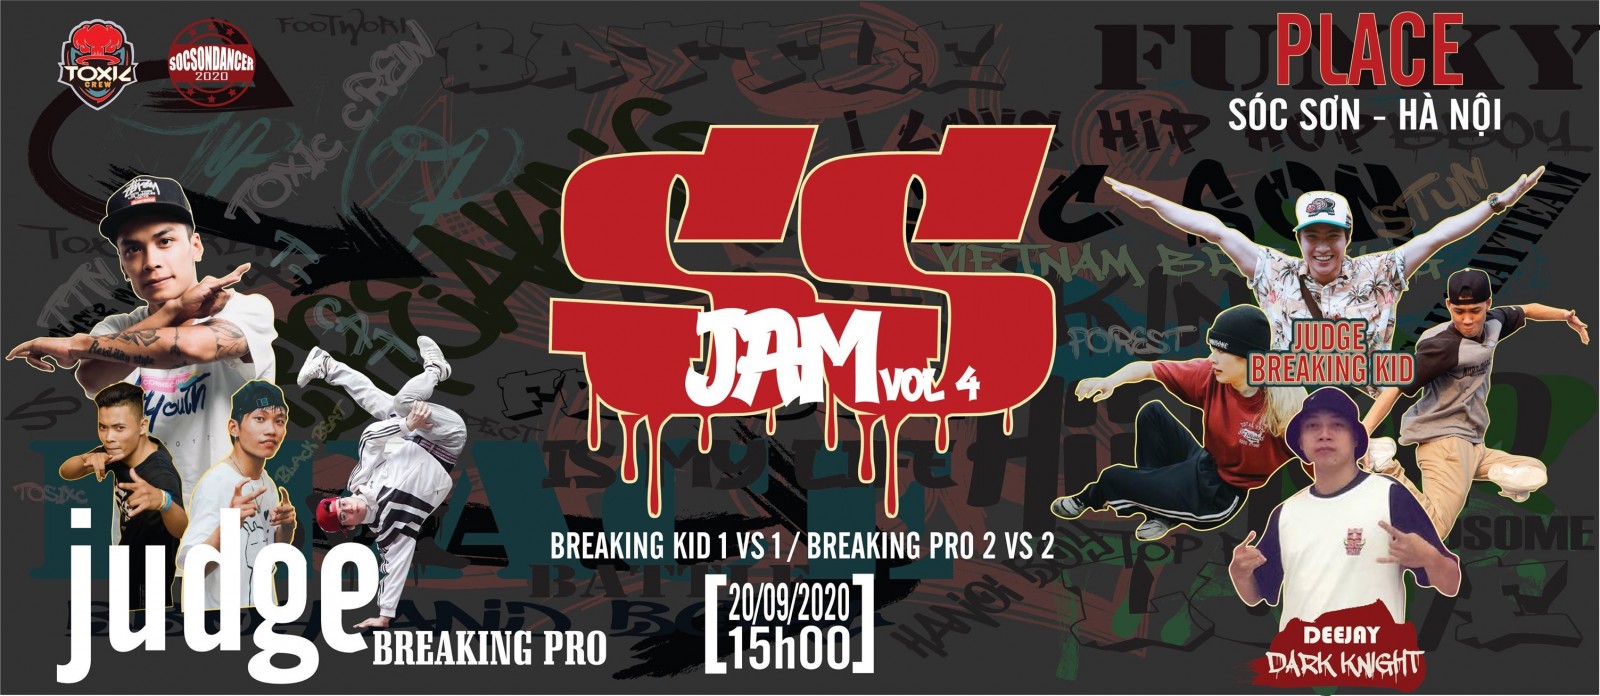 Giải đấu ven đô SS Jam Vol 4 - Sự hấp dẫn báo hiệu một quý IV thành công của Breaking Hà Nội.